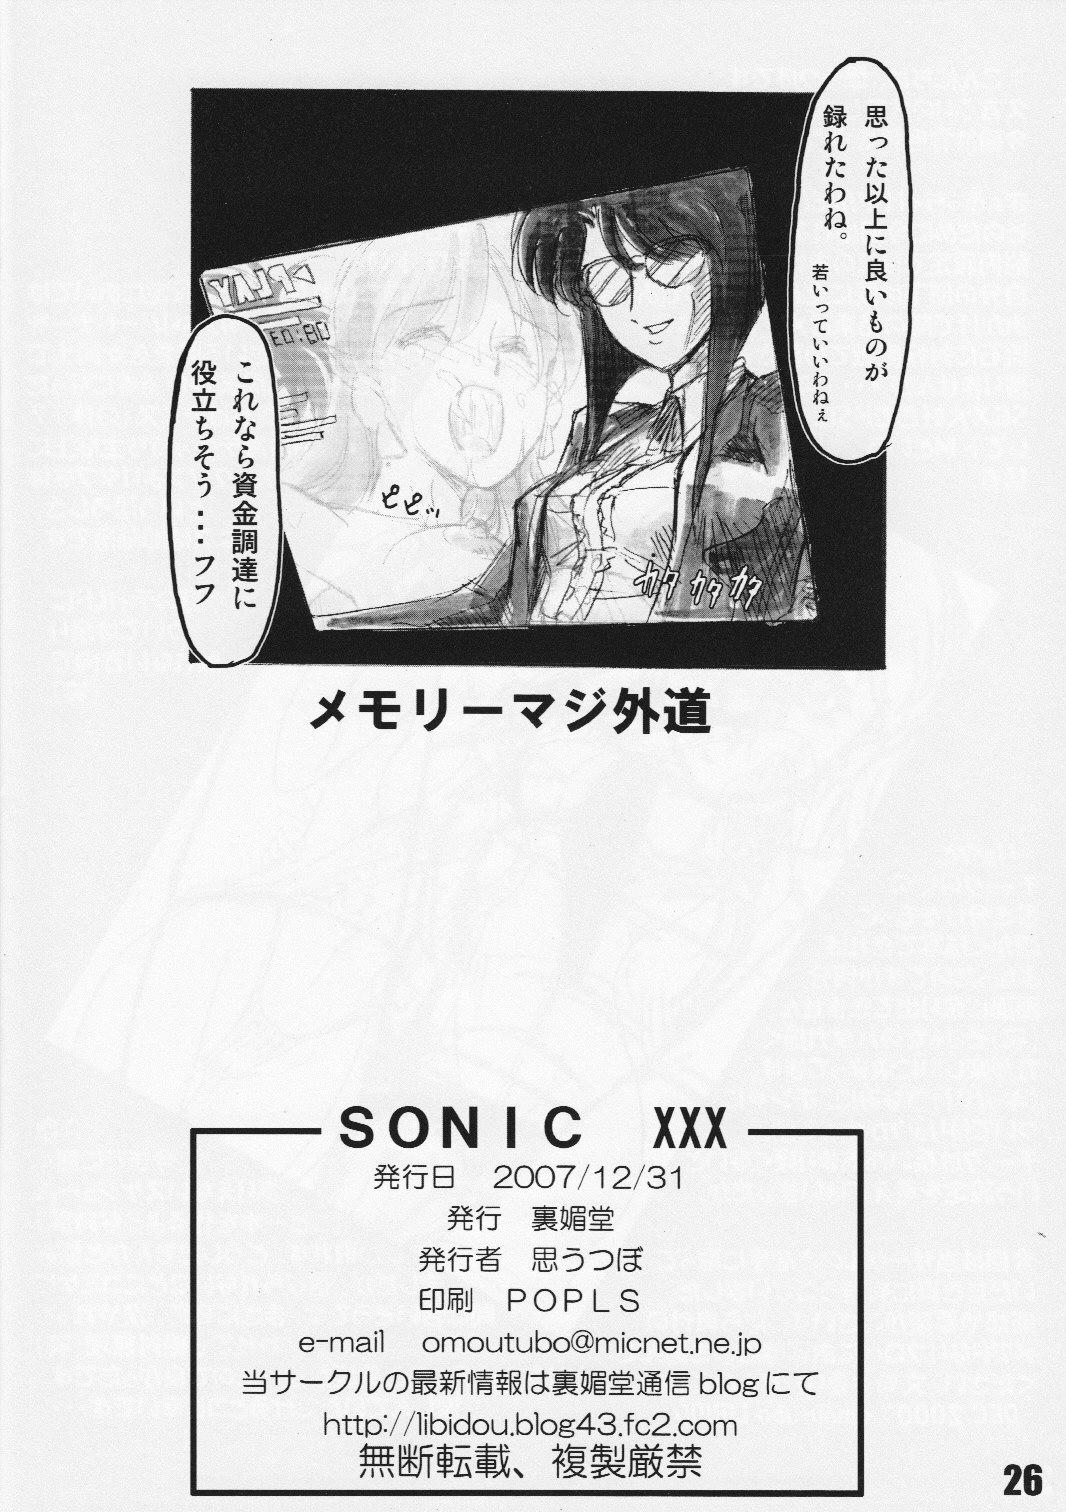 Calle SONICxxx - Sonic soldier borgman Arrecha - Page 25